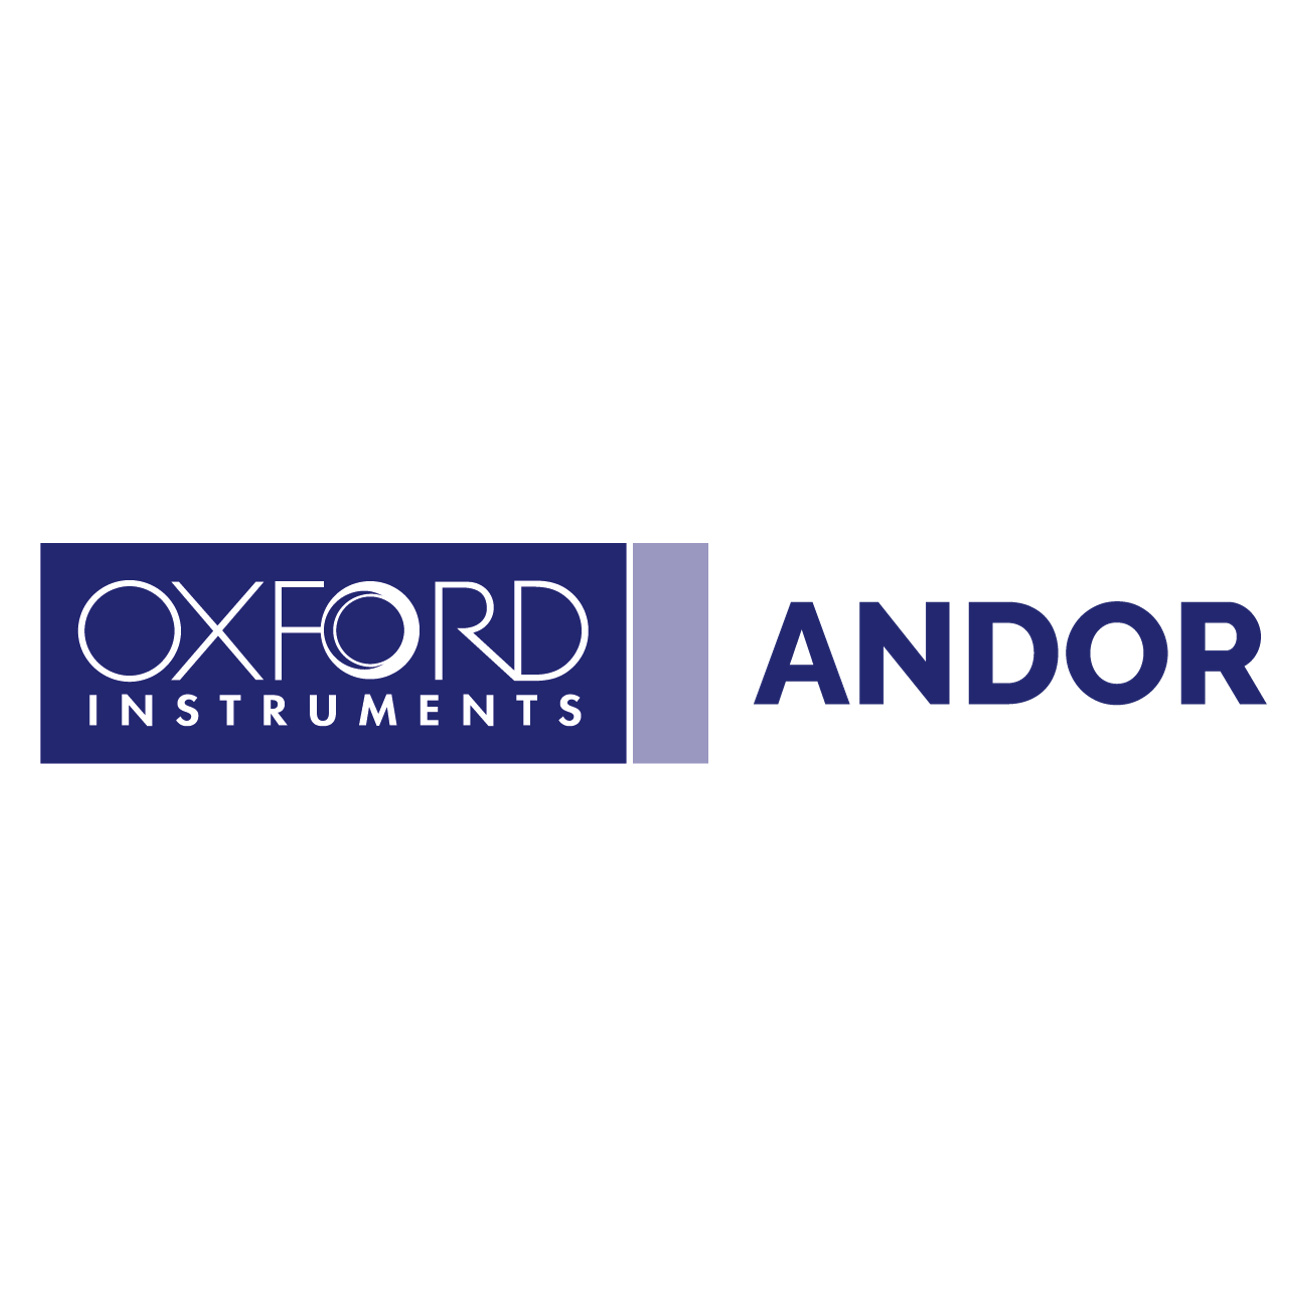 Oxford Instruments Andor logo